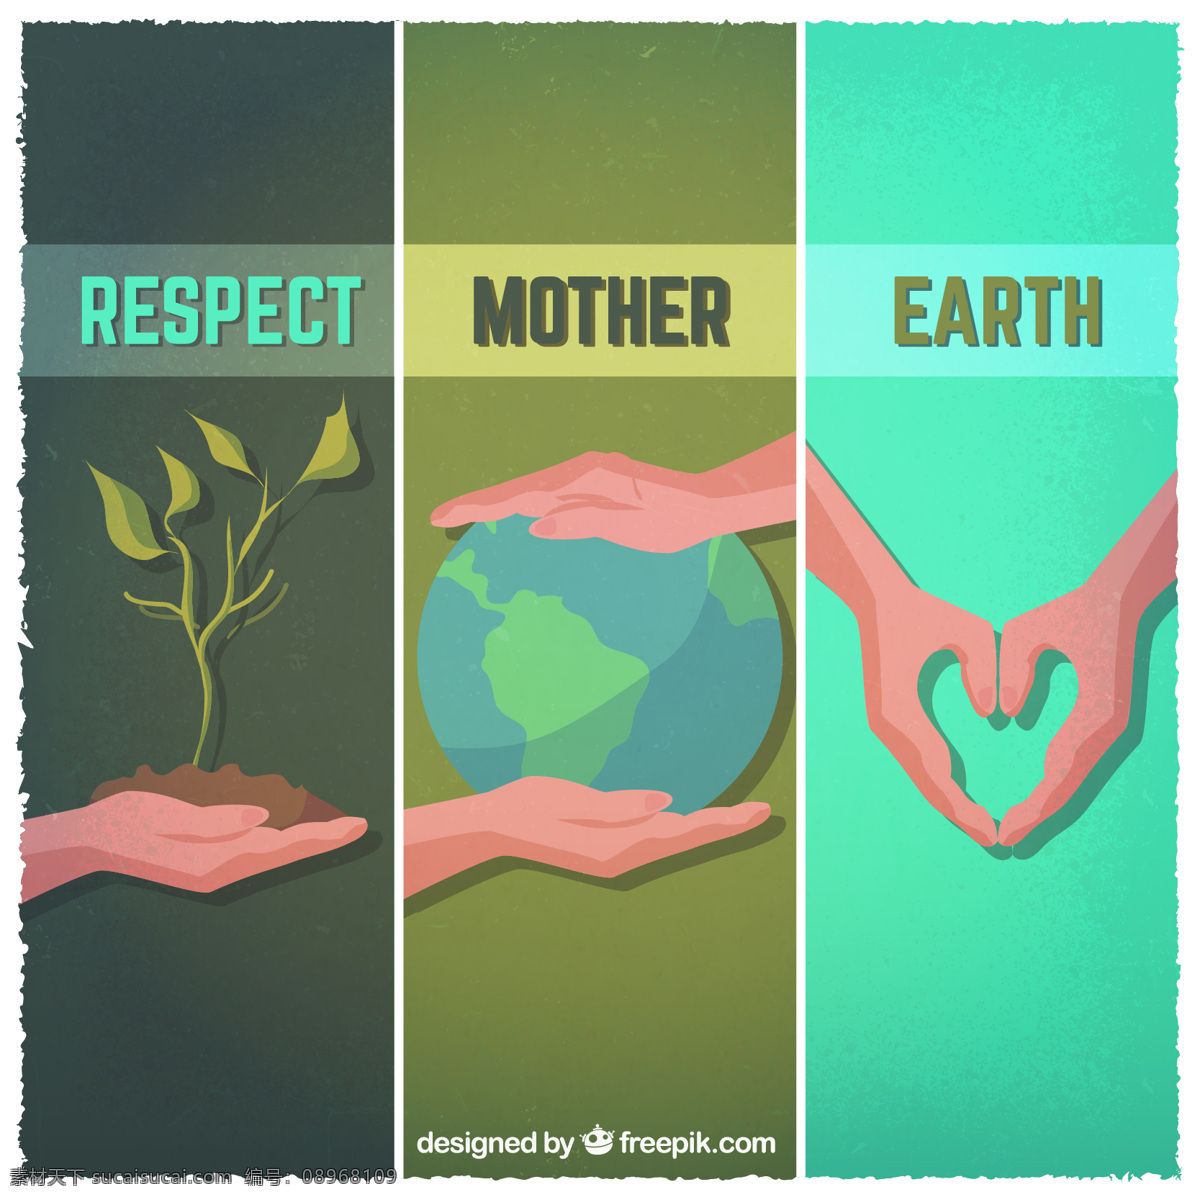 尊重地球母亲 自然 地球 母亲 植物 生态 环境 尊重 大地母亲